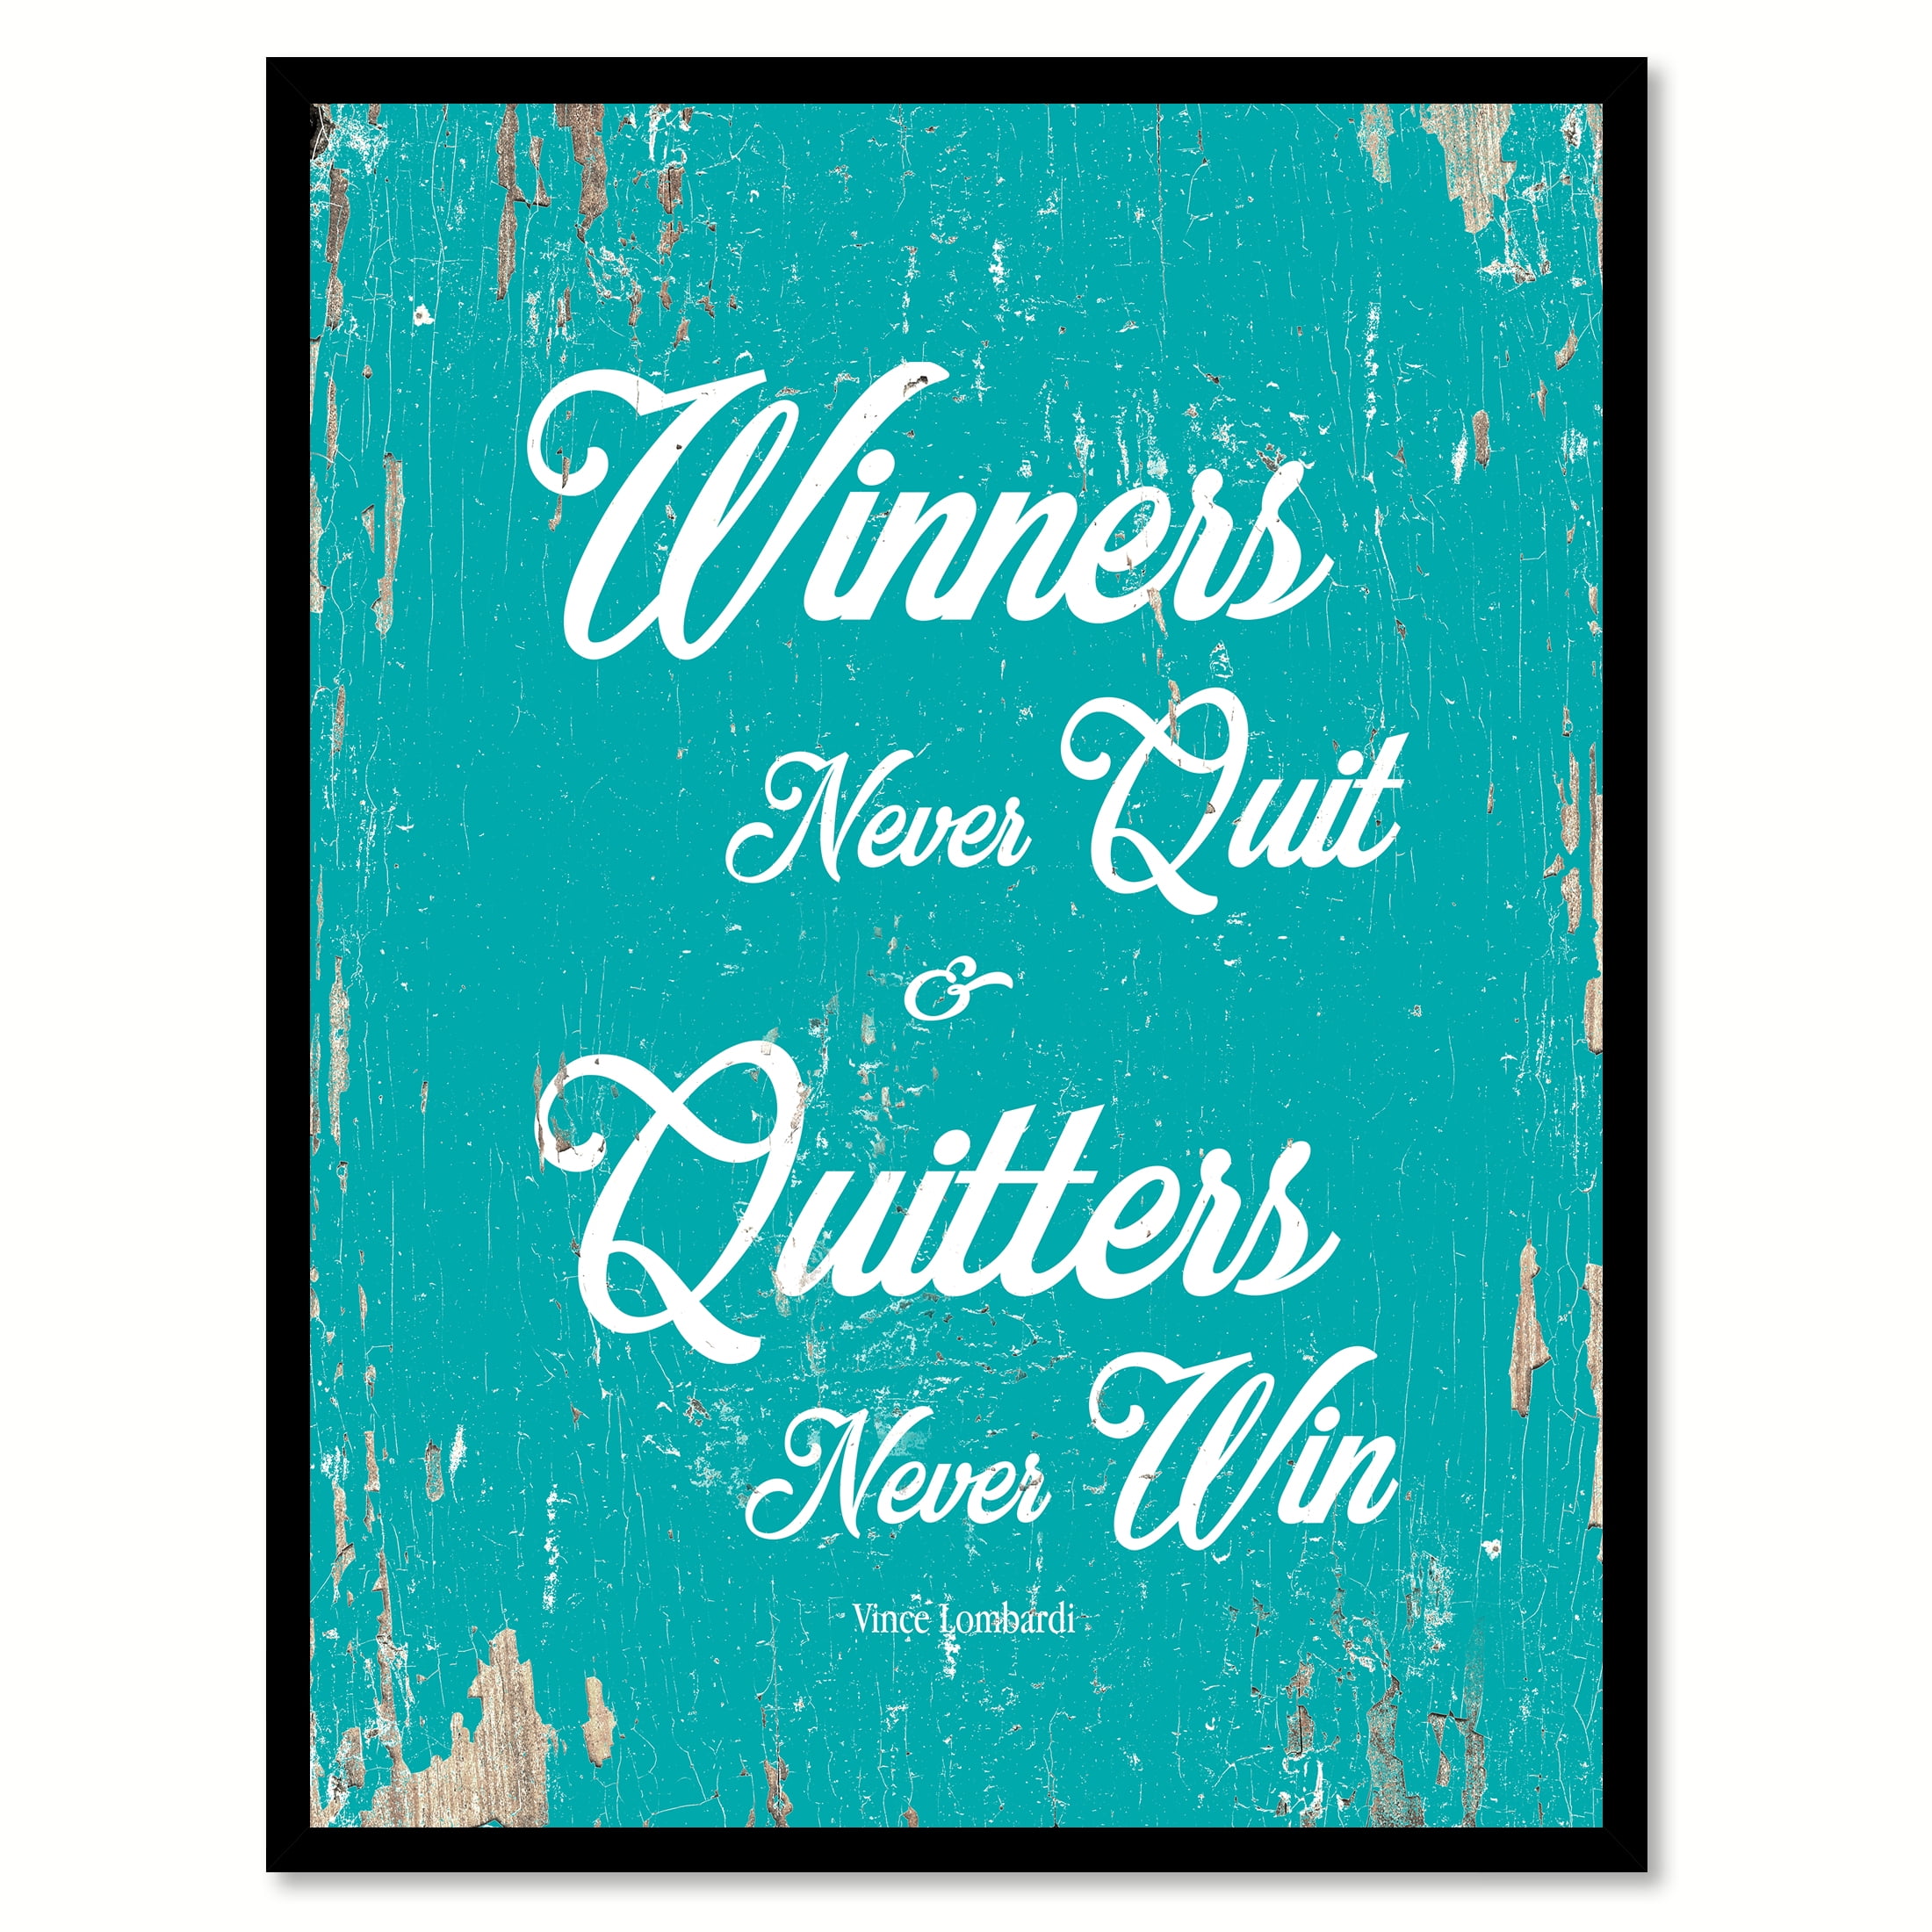 a quitter never wins